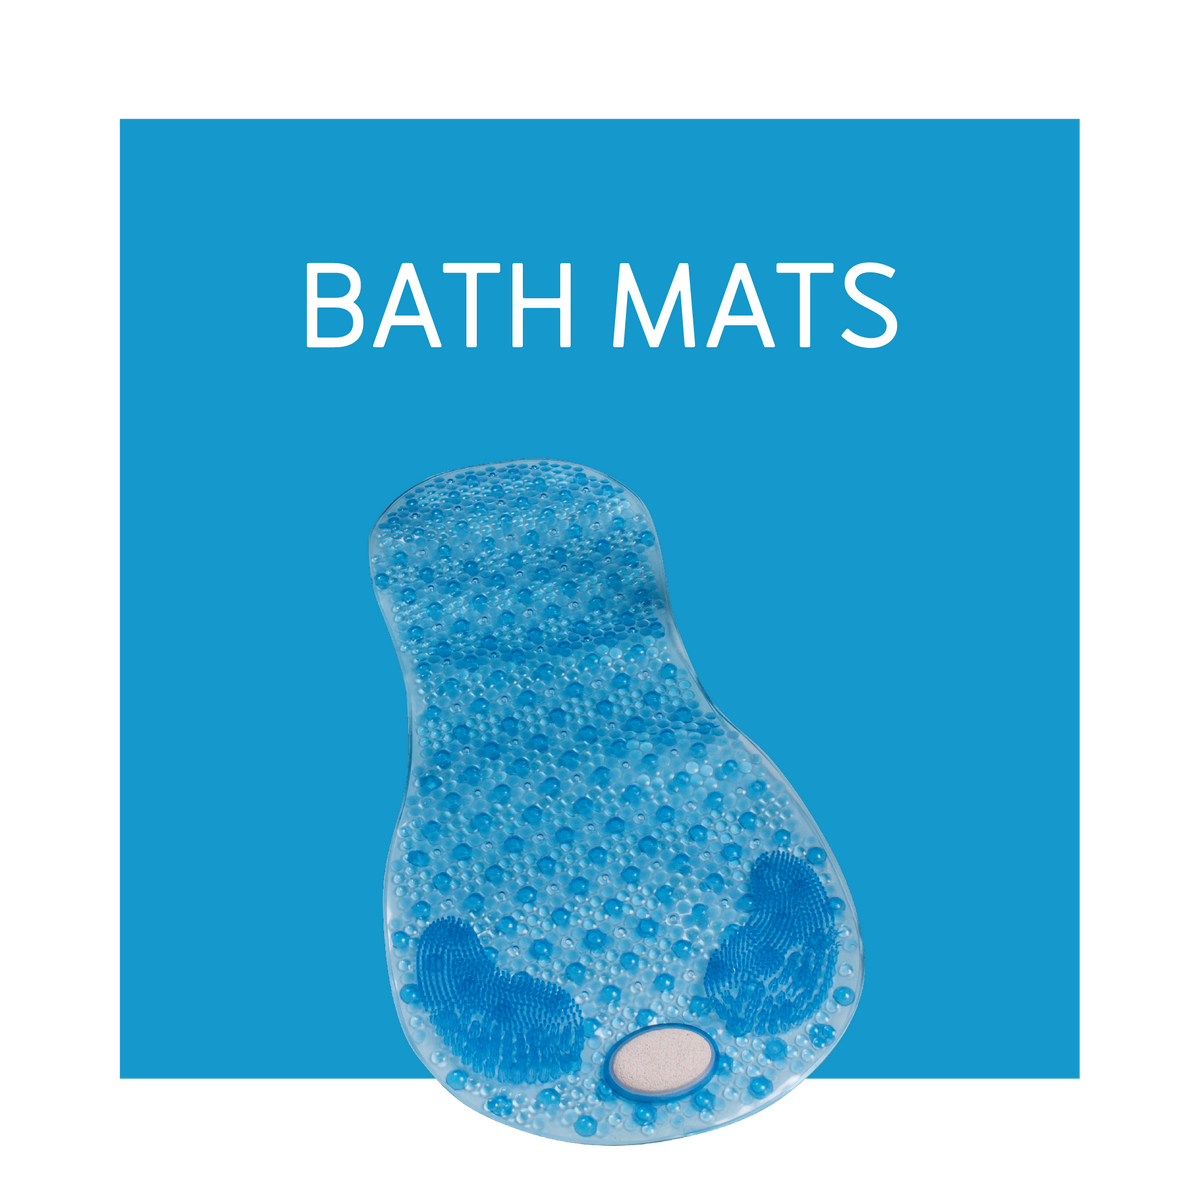 A bath mat on a blue background